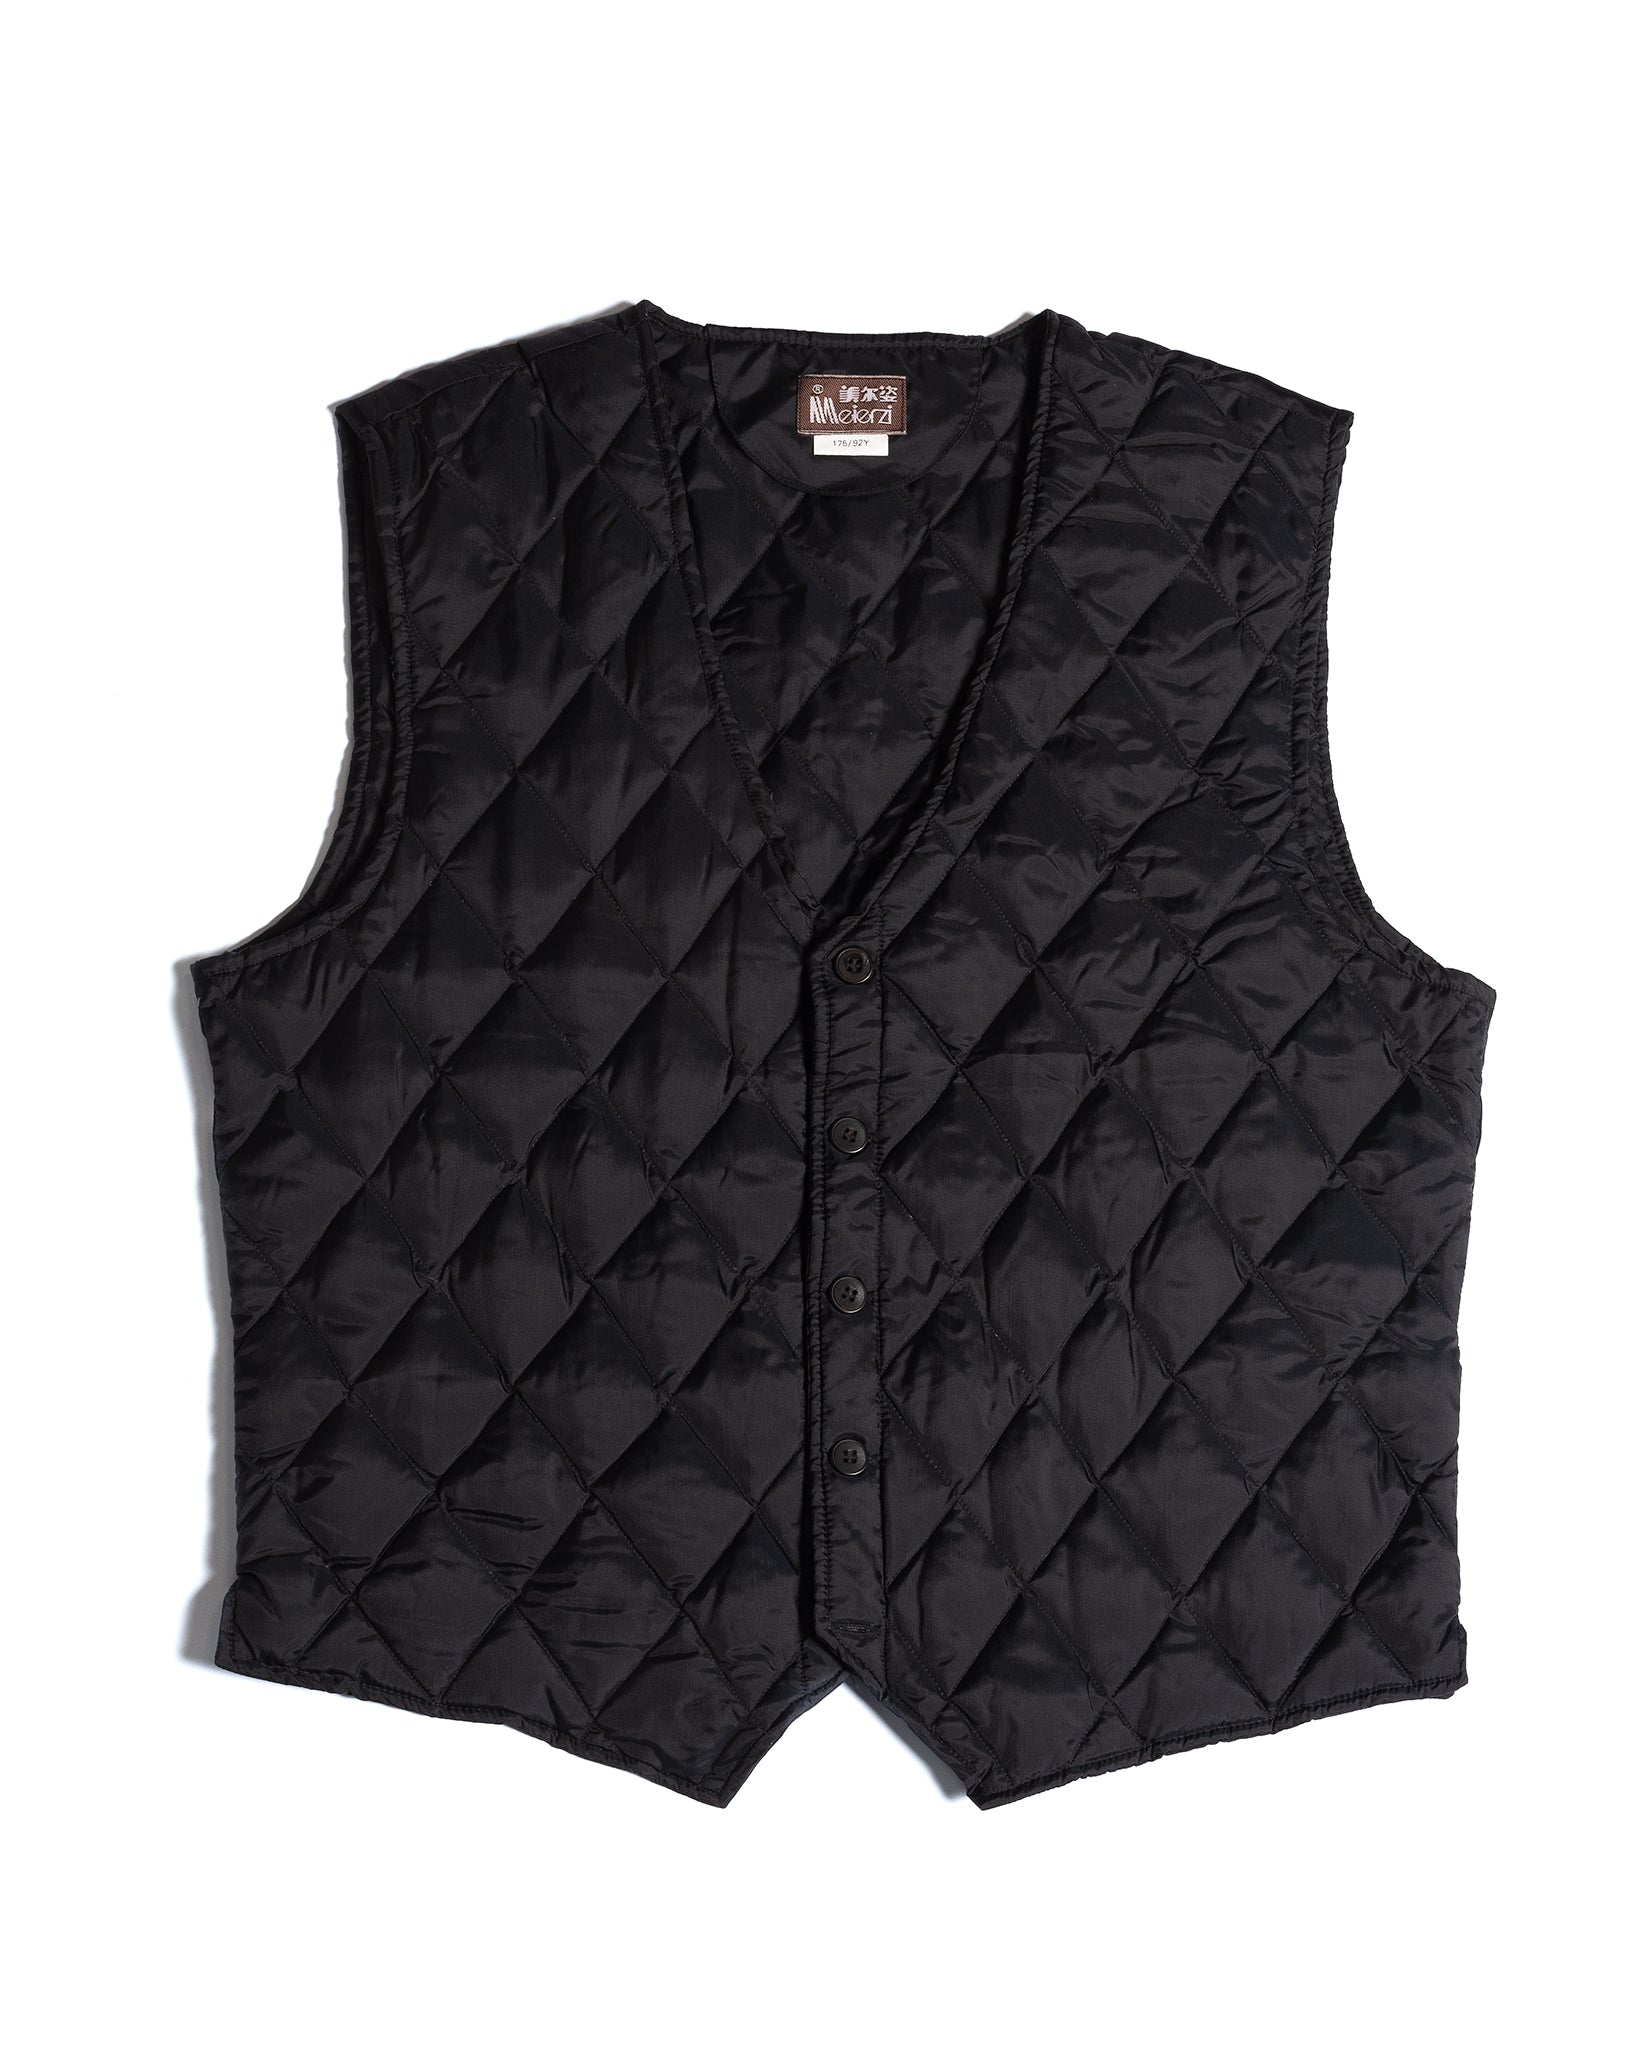 Nylon Angle Zip Vest - Black, Fashion Nova, Mens Jackets